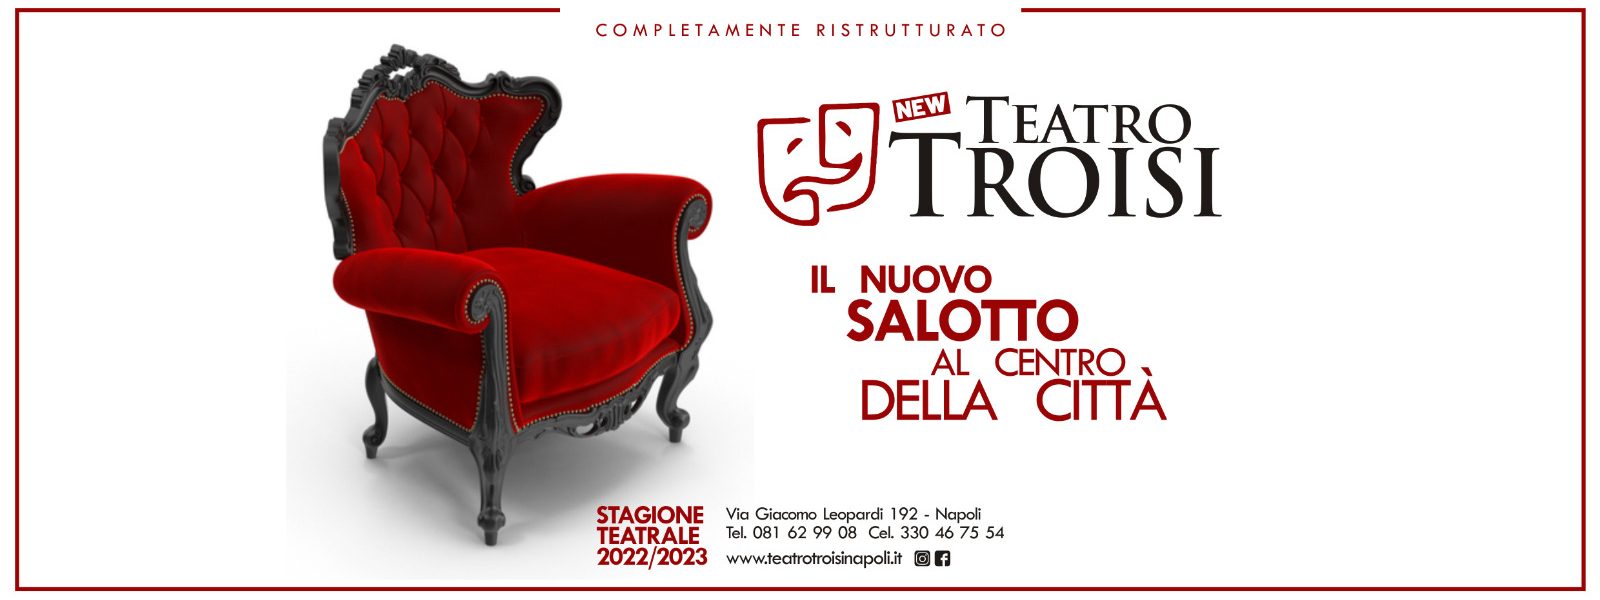 (c) Teatrotroisinapoli.it